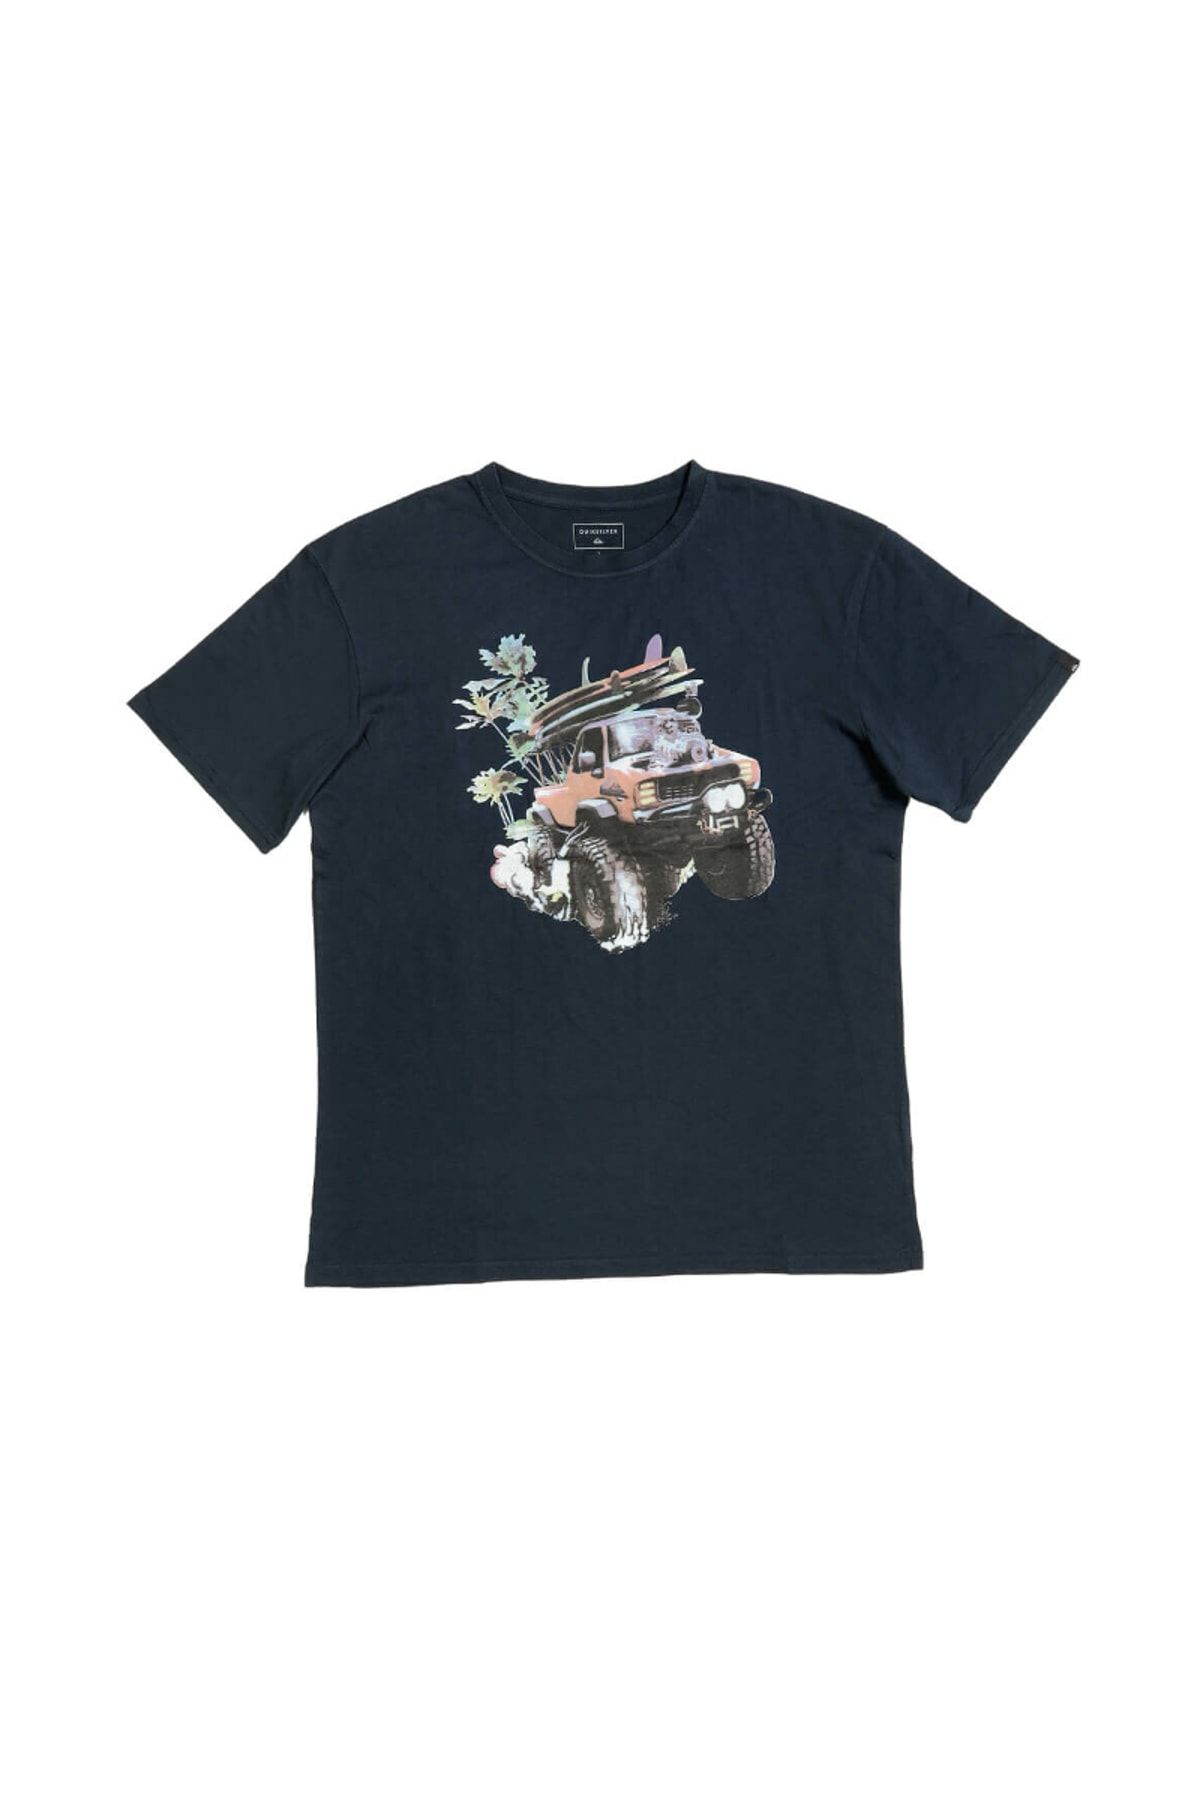 Quiksilver CLASSIC MONSTER GARDEN Lacivert Erkek Kısa Kol T-Shirt